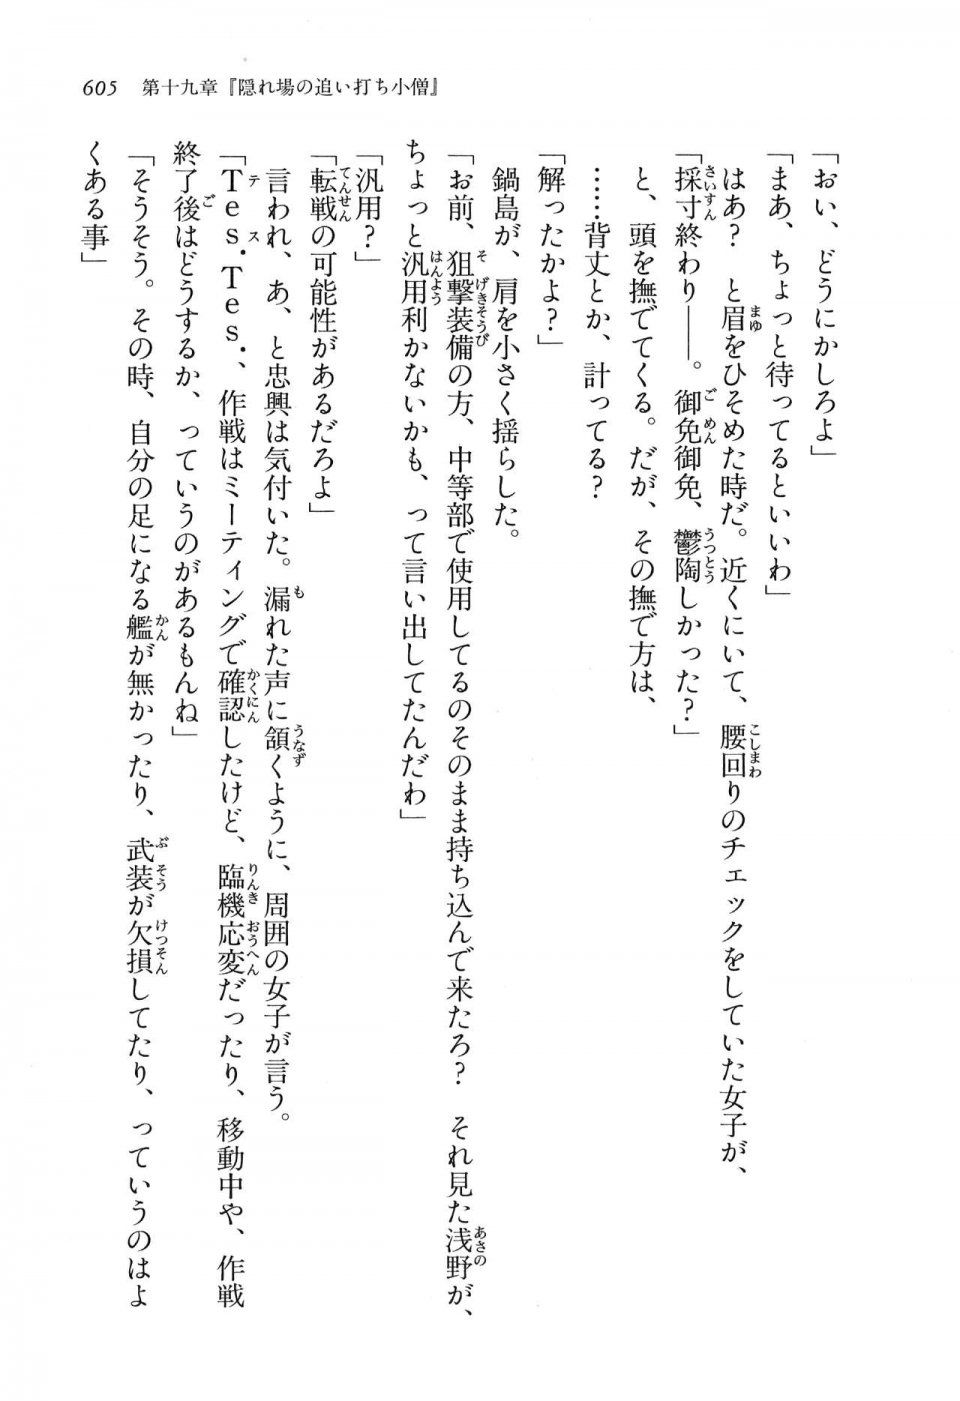 Kyoukai Senjou no Horizon LN Vol 16(7A) - Photo #605